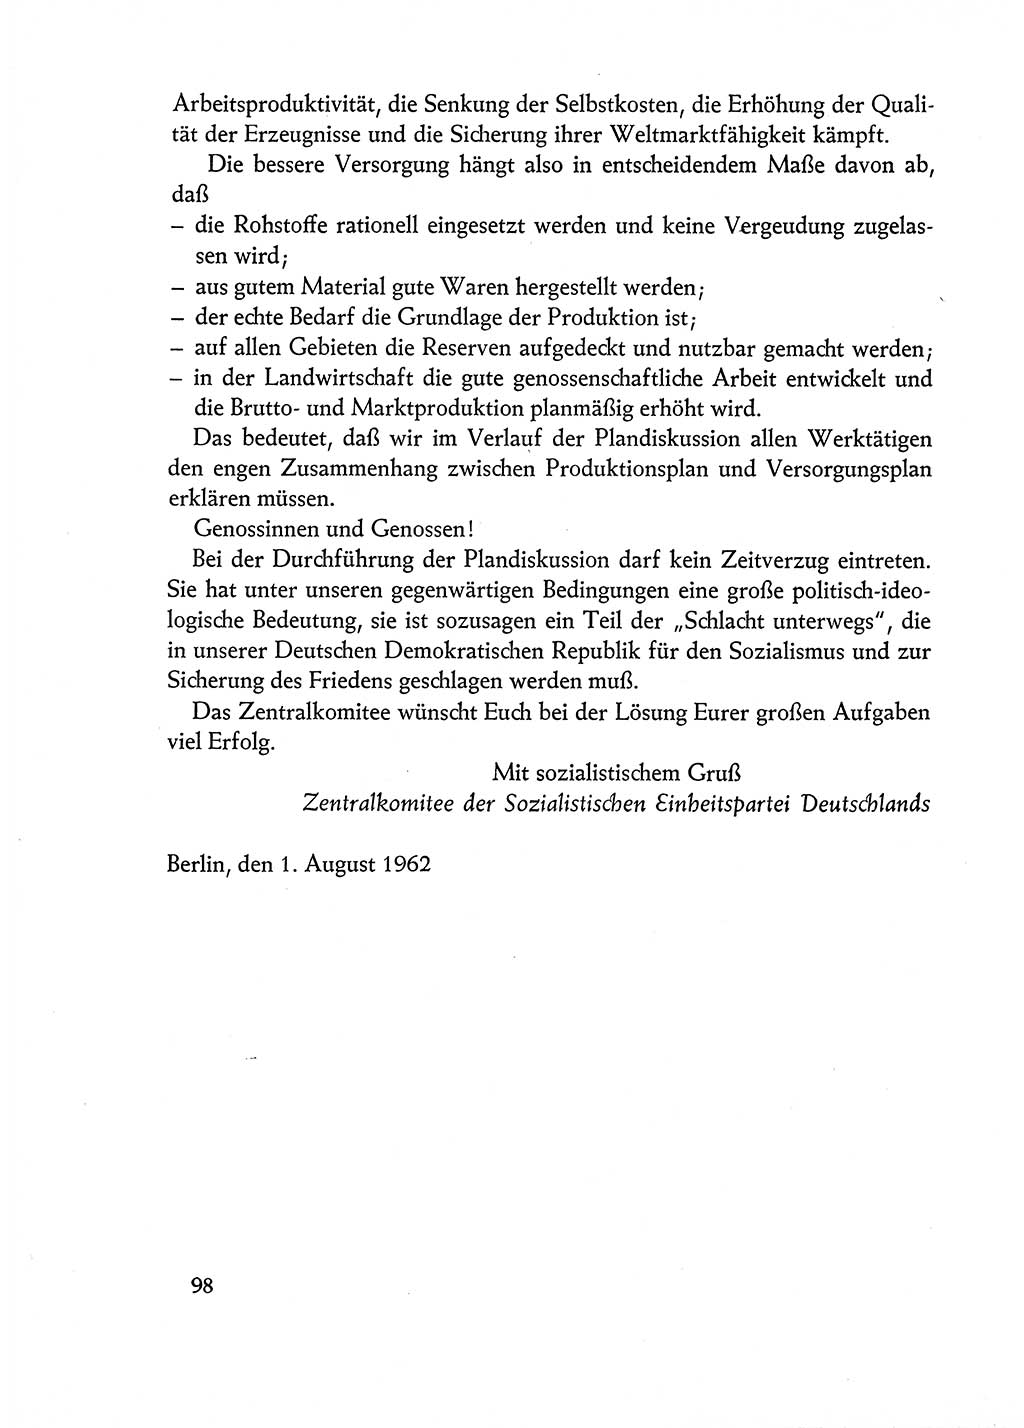 Dokumente der Sozialistischen Einheitspartei Deutschlands (SED) [Deutsche Demokratische Republik (DDR)] 1962-1963, Seite 98 (Dok. SED DDR 1962-1963, S. 98)